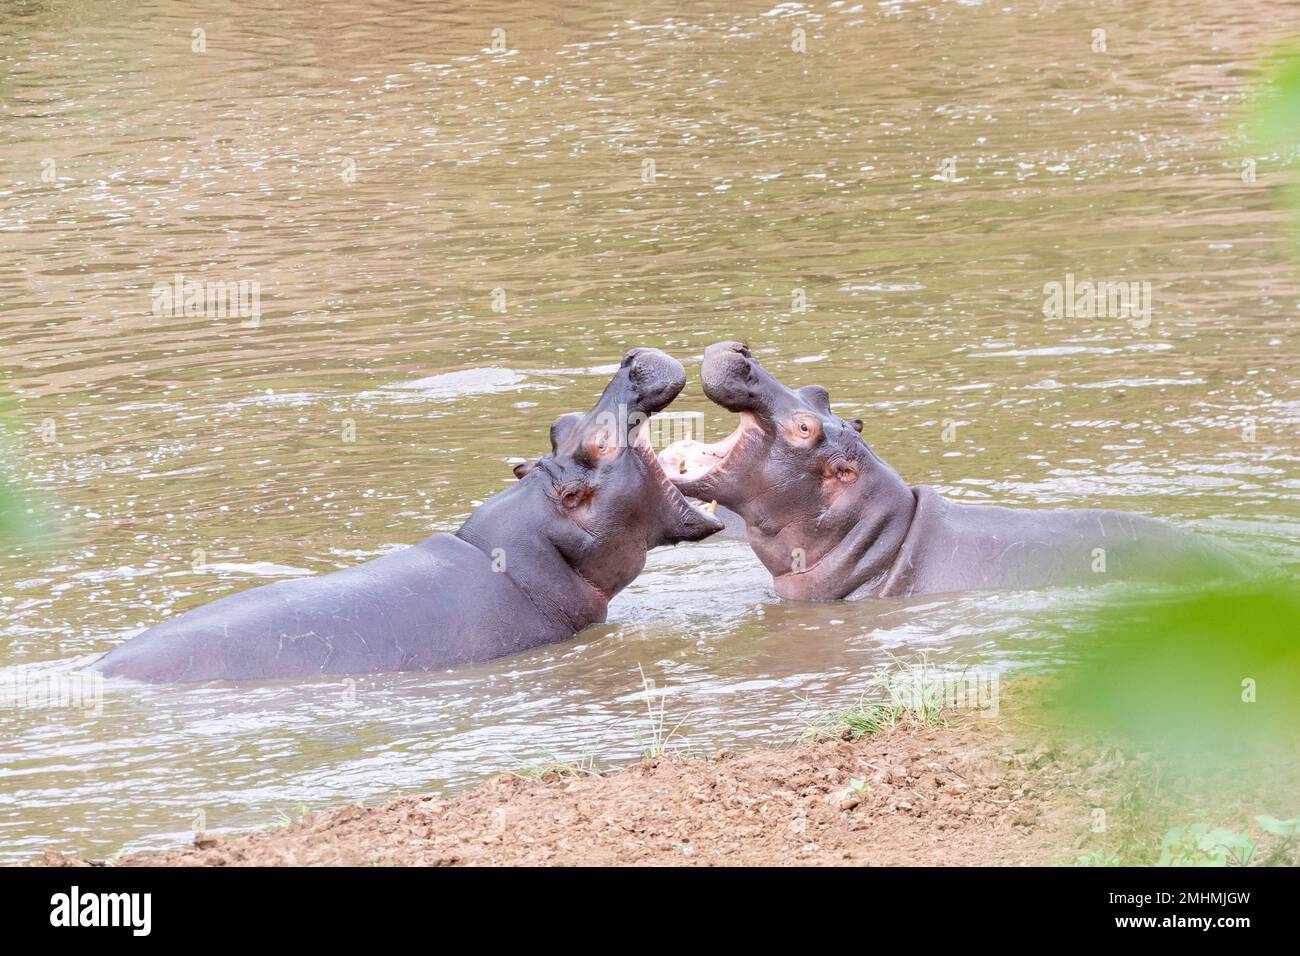 Lutte contre l'hippopotame mâle (Hippopotamus amphibius), Parc national Kruger, Afrique du Sud. Troisième plus grand mammifère terrestre et l'un des plus dangereux Banque D'Images